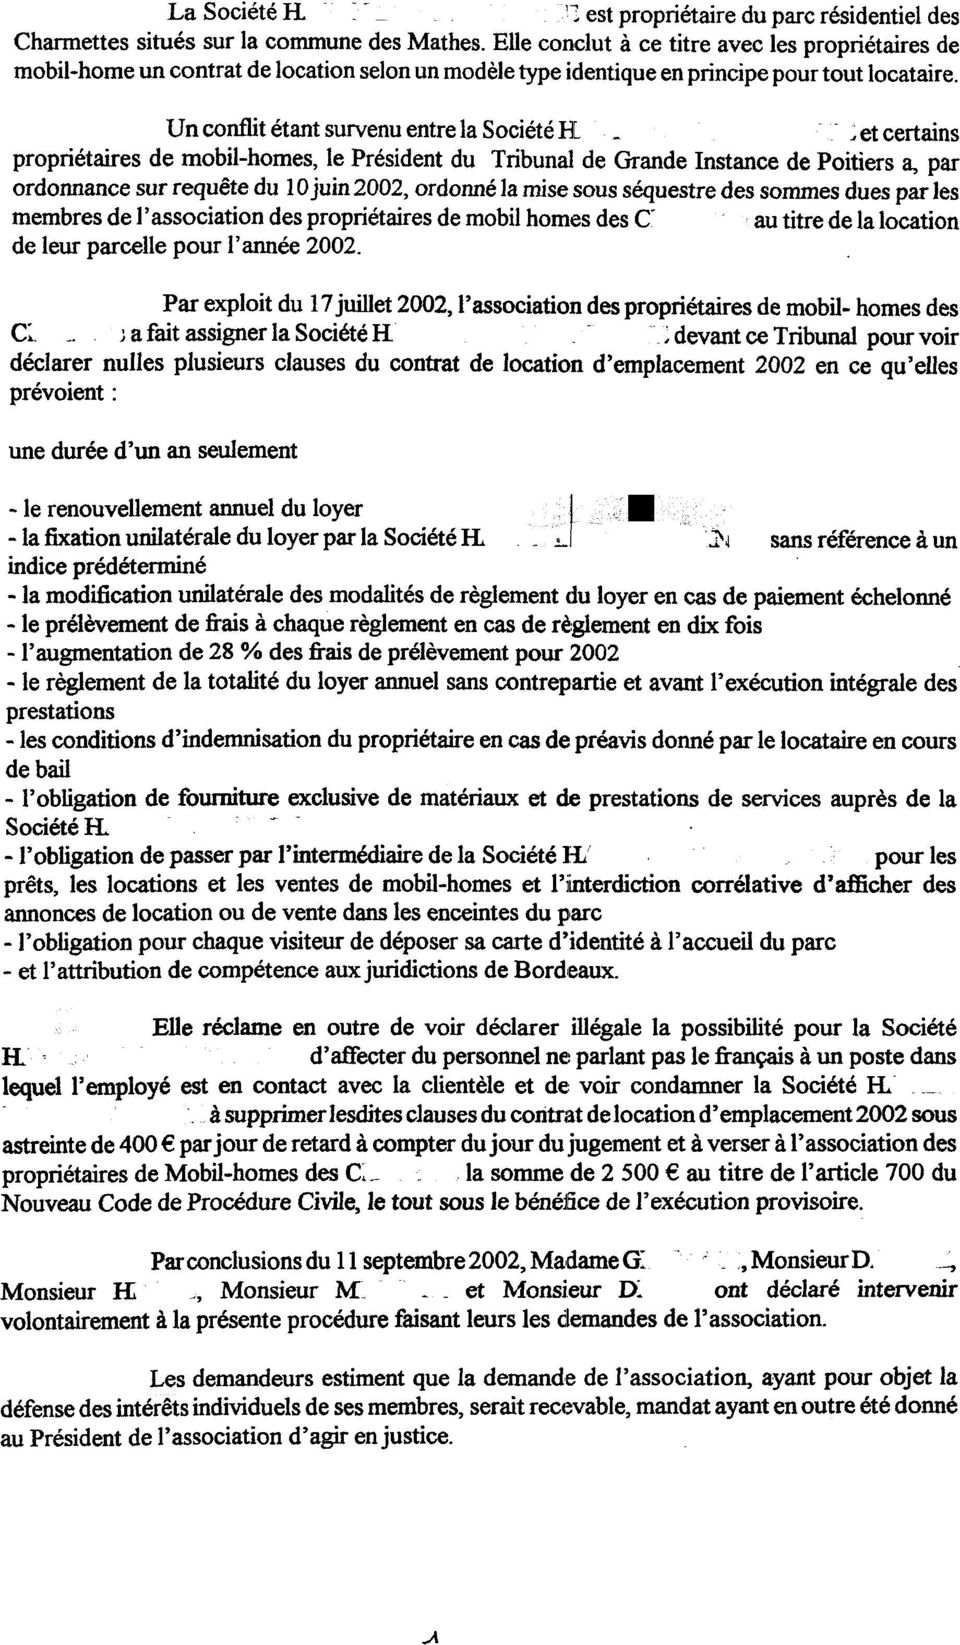 Un conflit étant survenu entre la Société El --~ et certains propriétaires de mobil-homes, le Président du Tribunal de Grande Instance de Poitiers a, par ordonnance sur requête du 10 juin 2002,